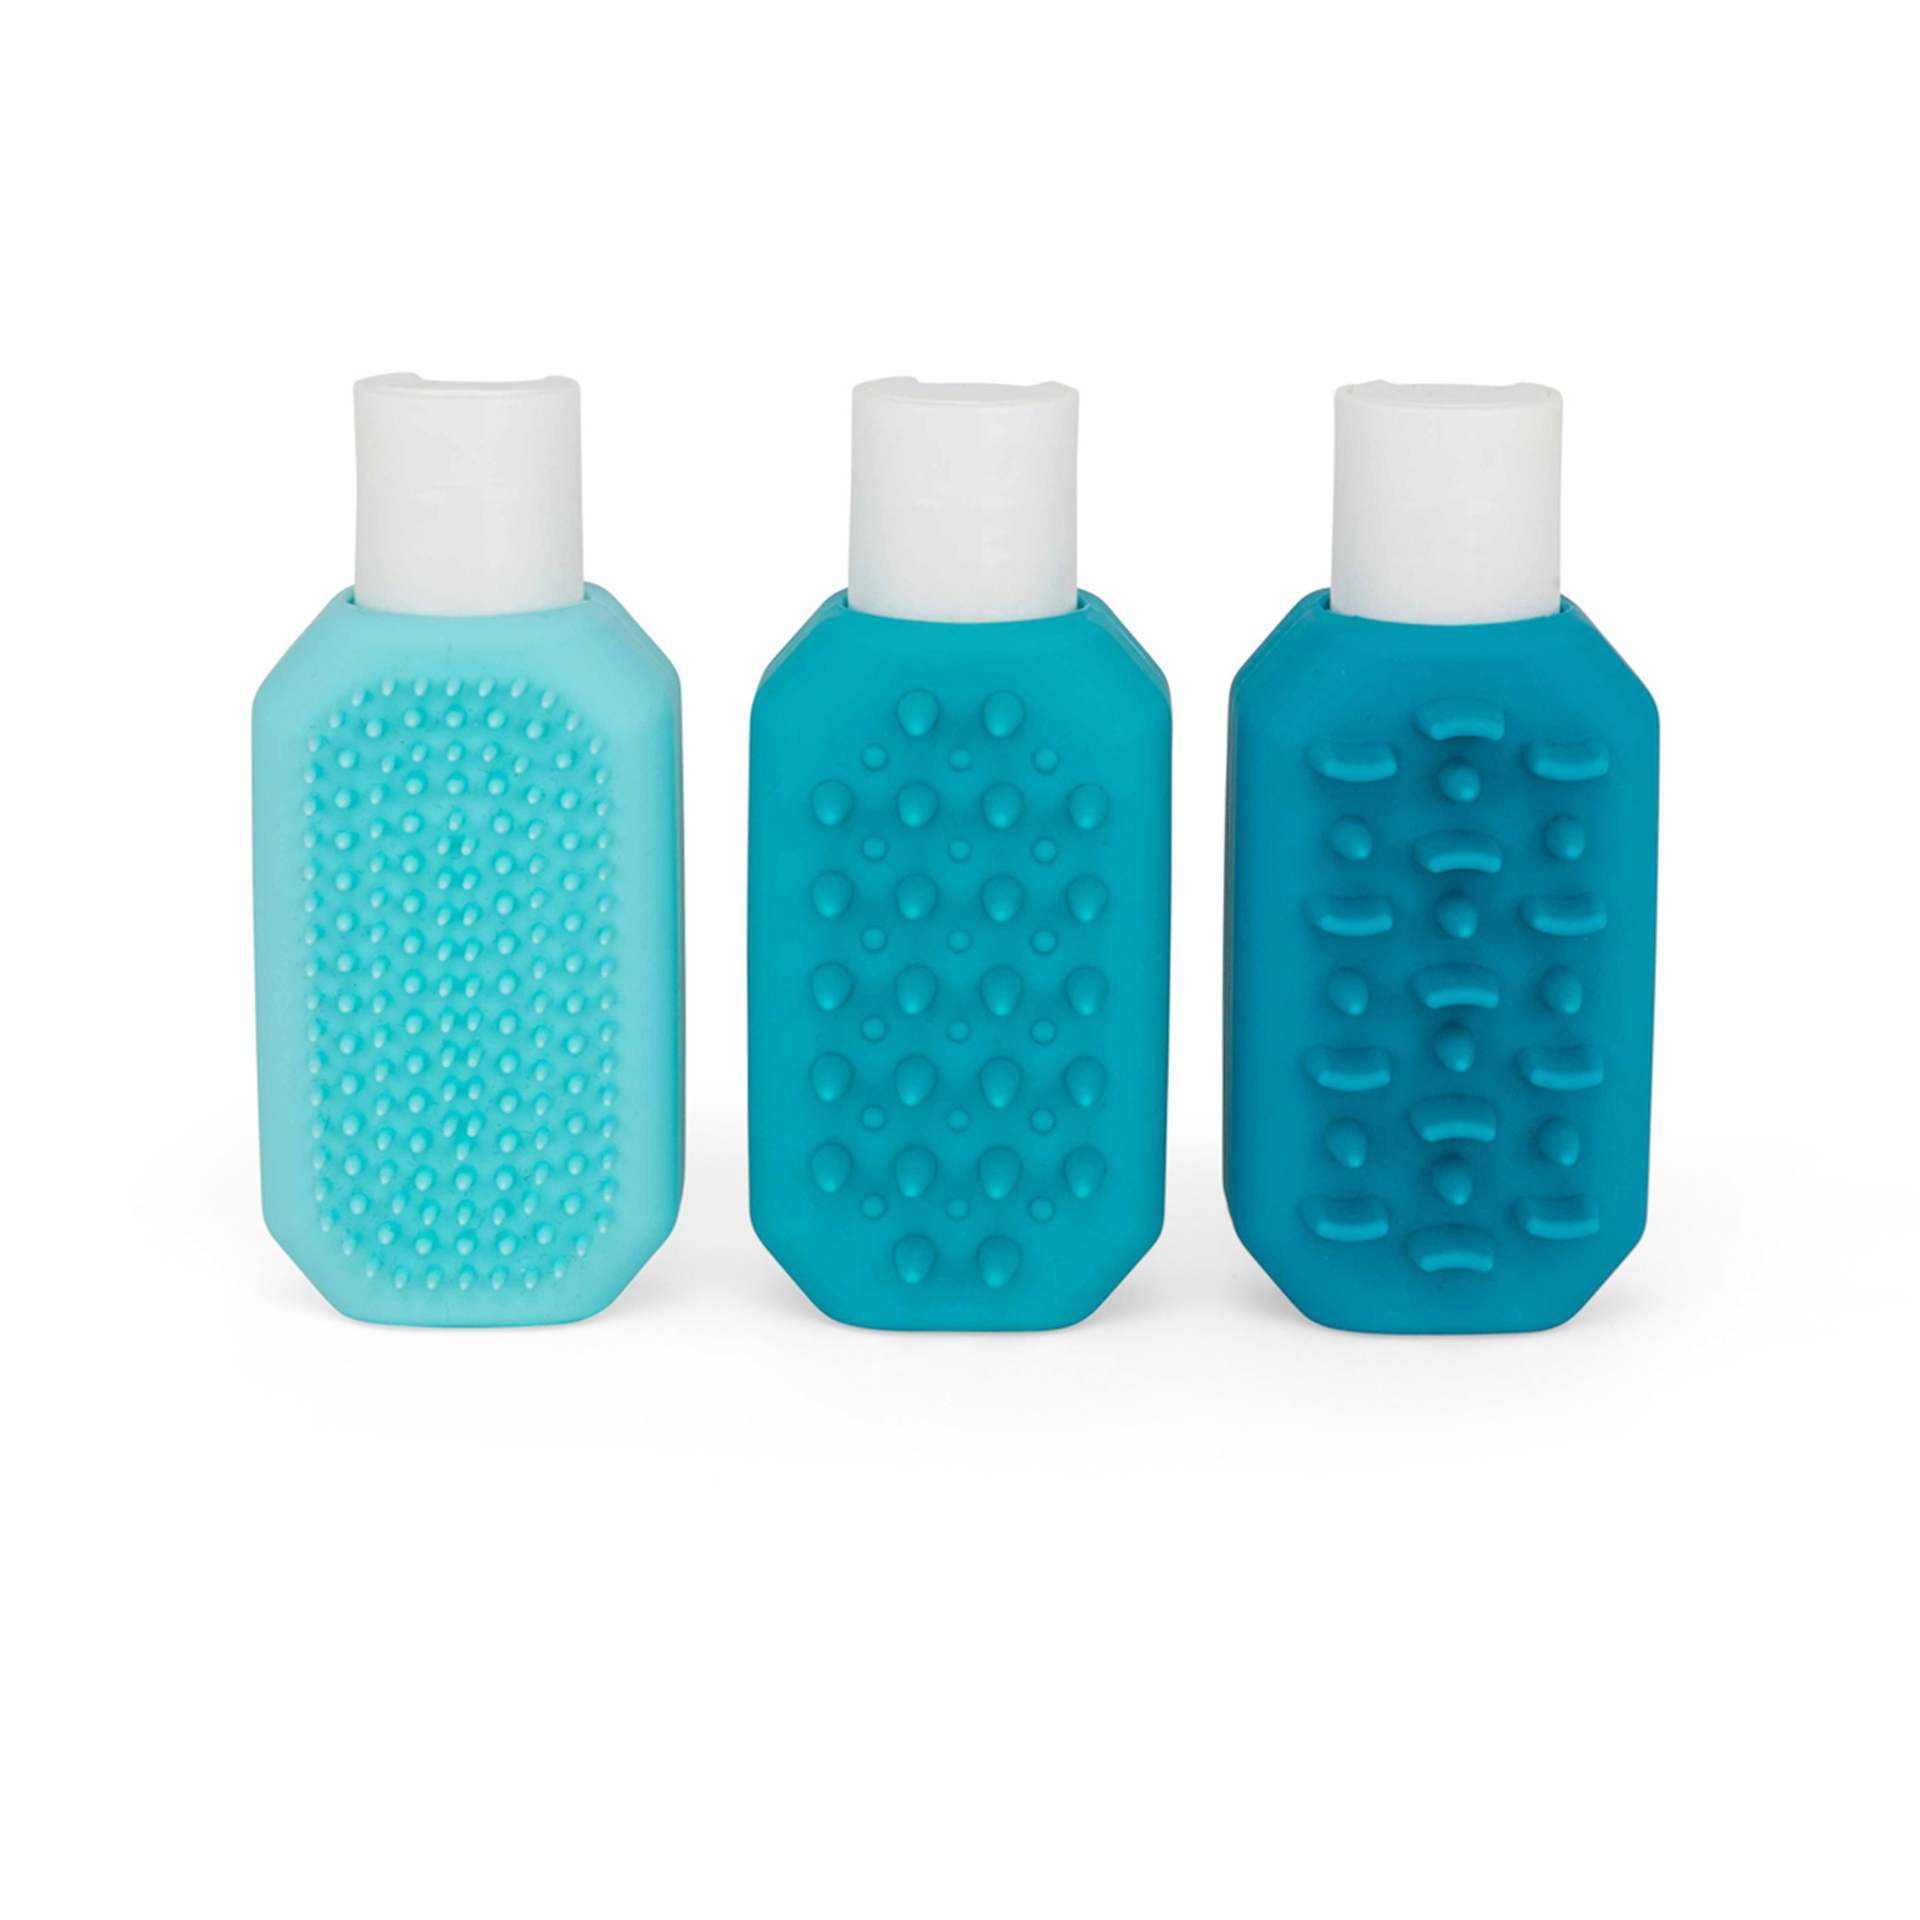 Bottigliette da viaggio con spazzole integrate - Set da 3 pz, , large